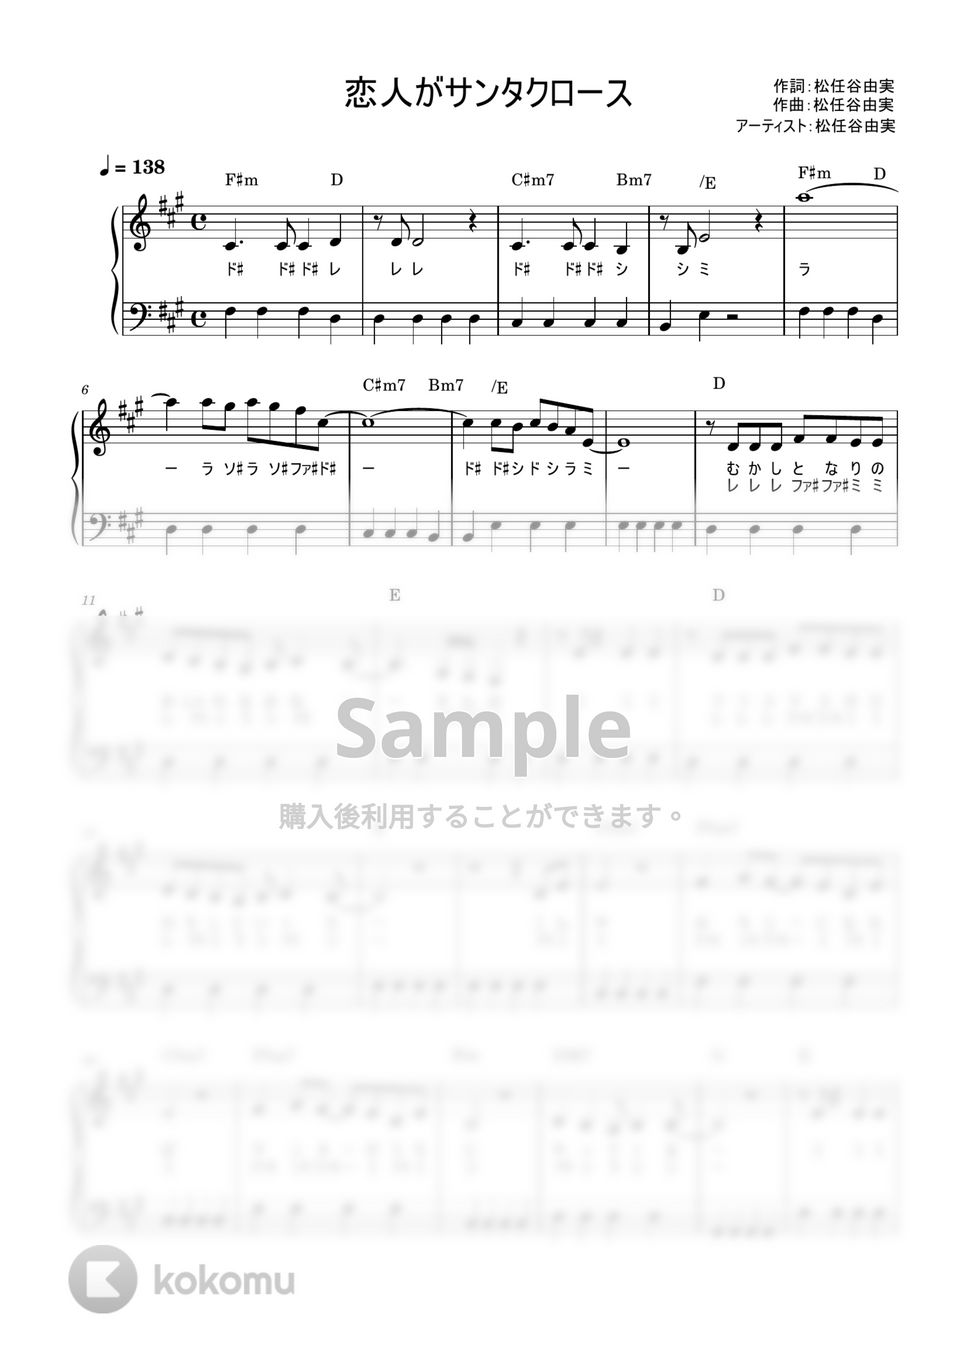 松任谷 由実 - 恋人がサンタクロース (かんたん / 歌詞付き / ドレミ付き / 初心者) by piano.tokyo